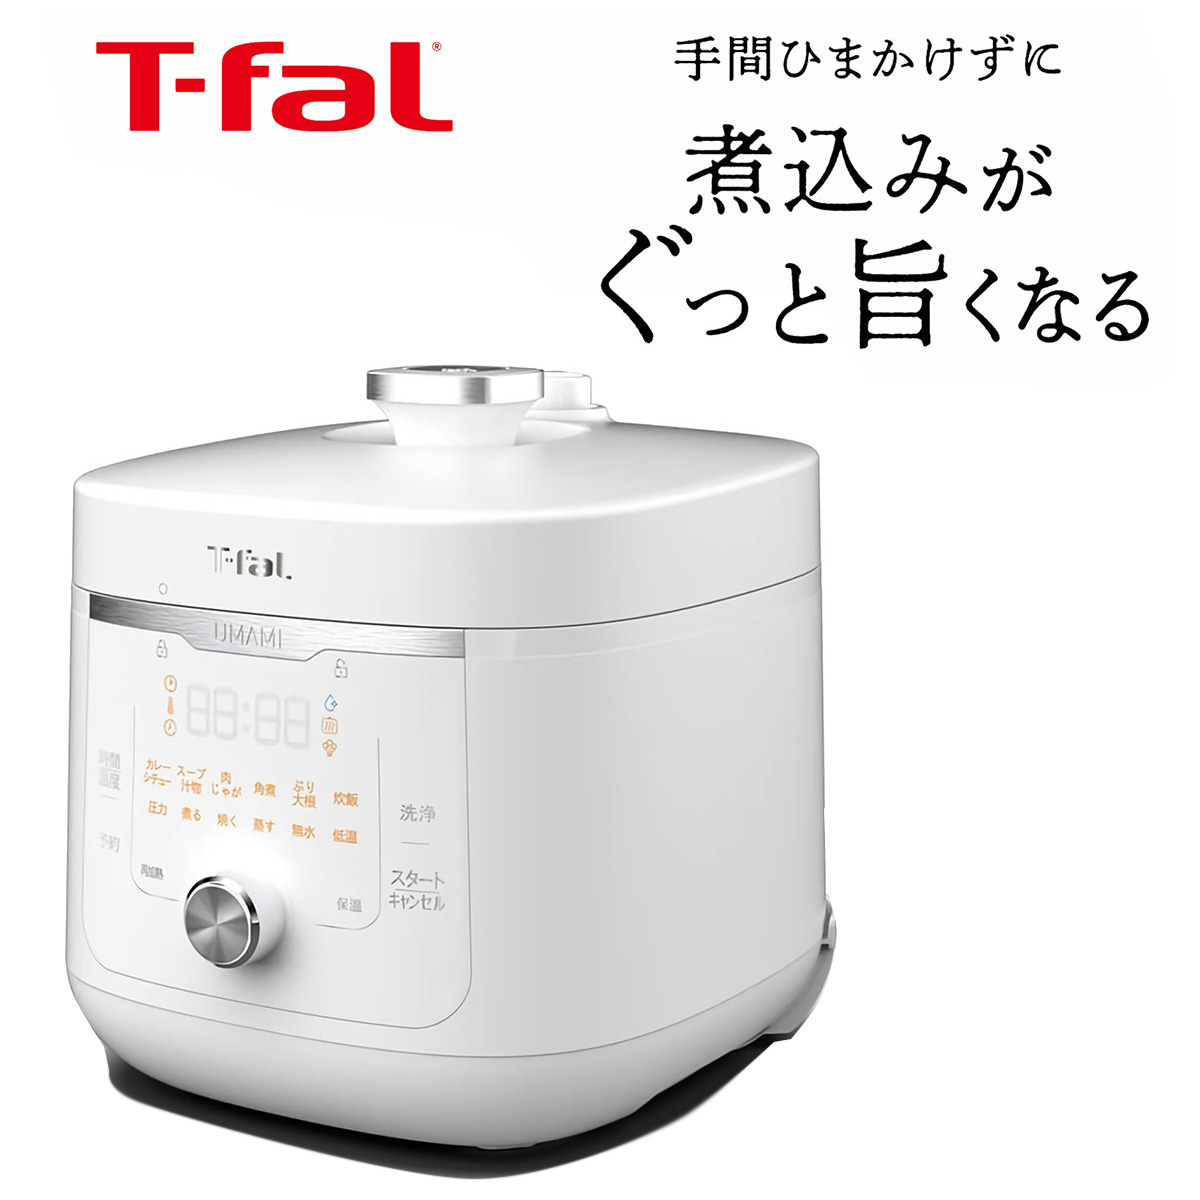 ひかりＴＶショッピング | T-fal 旨み電気圧力鍋 ラクラ・クッカー 4L